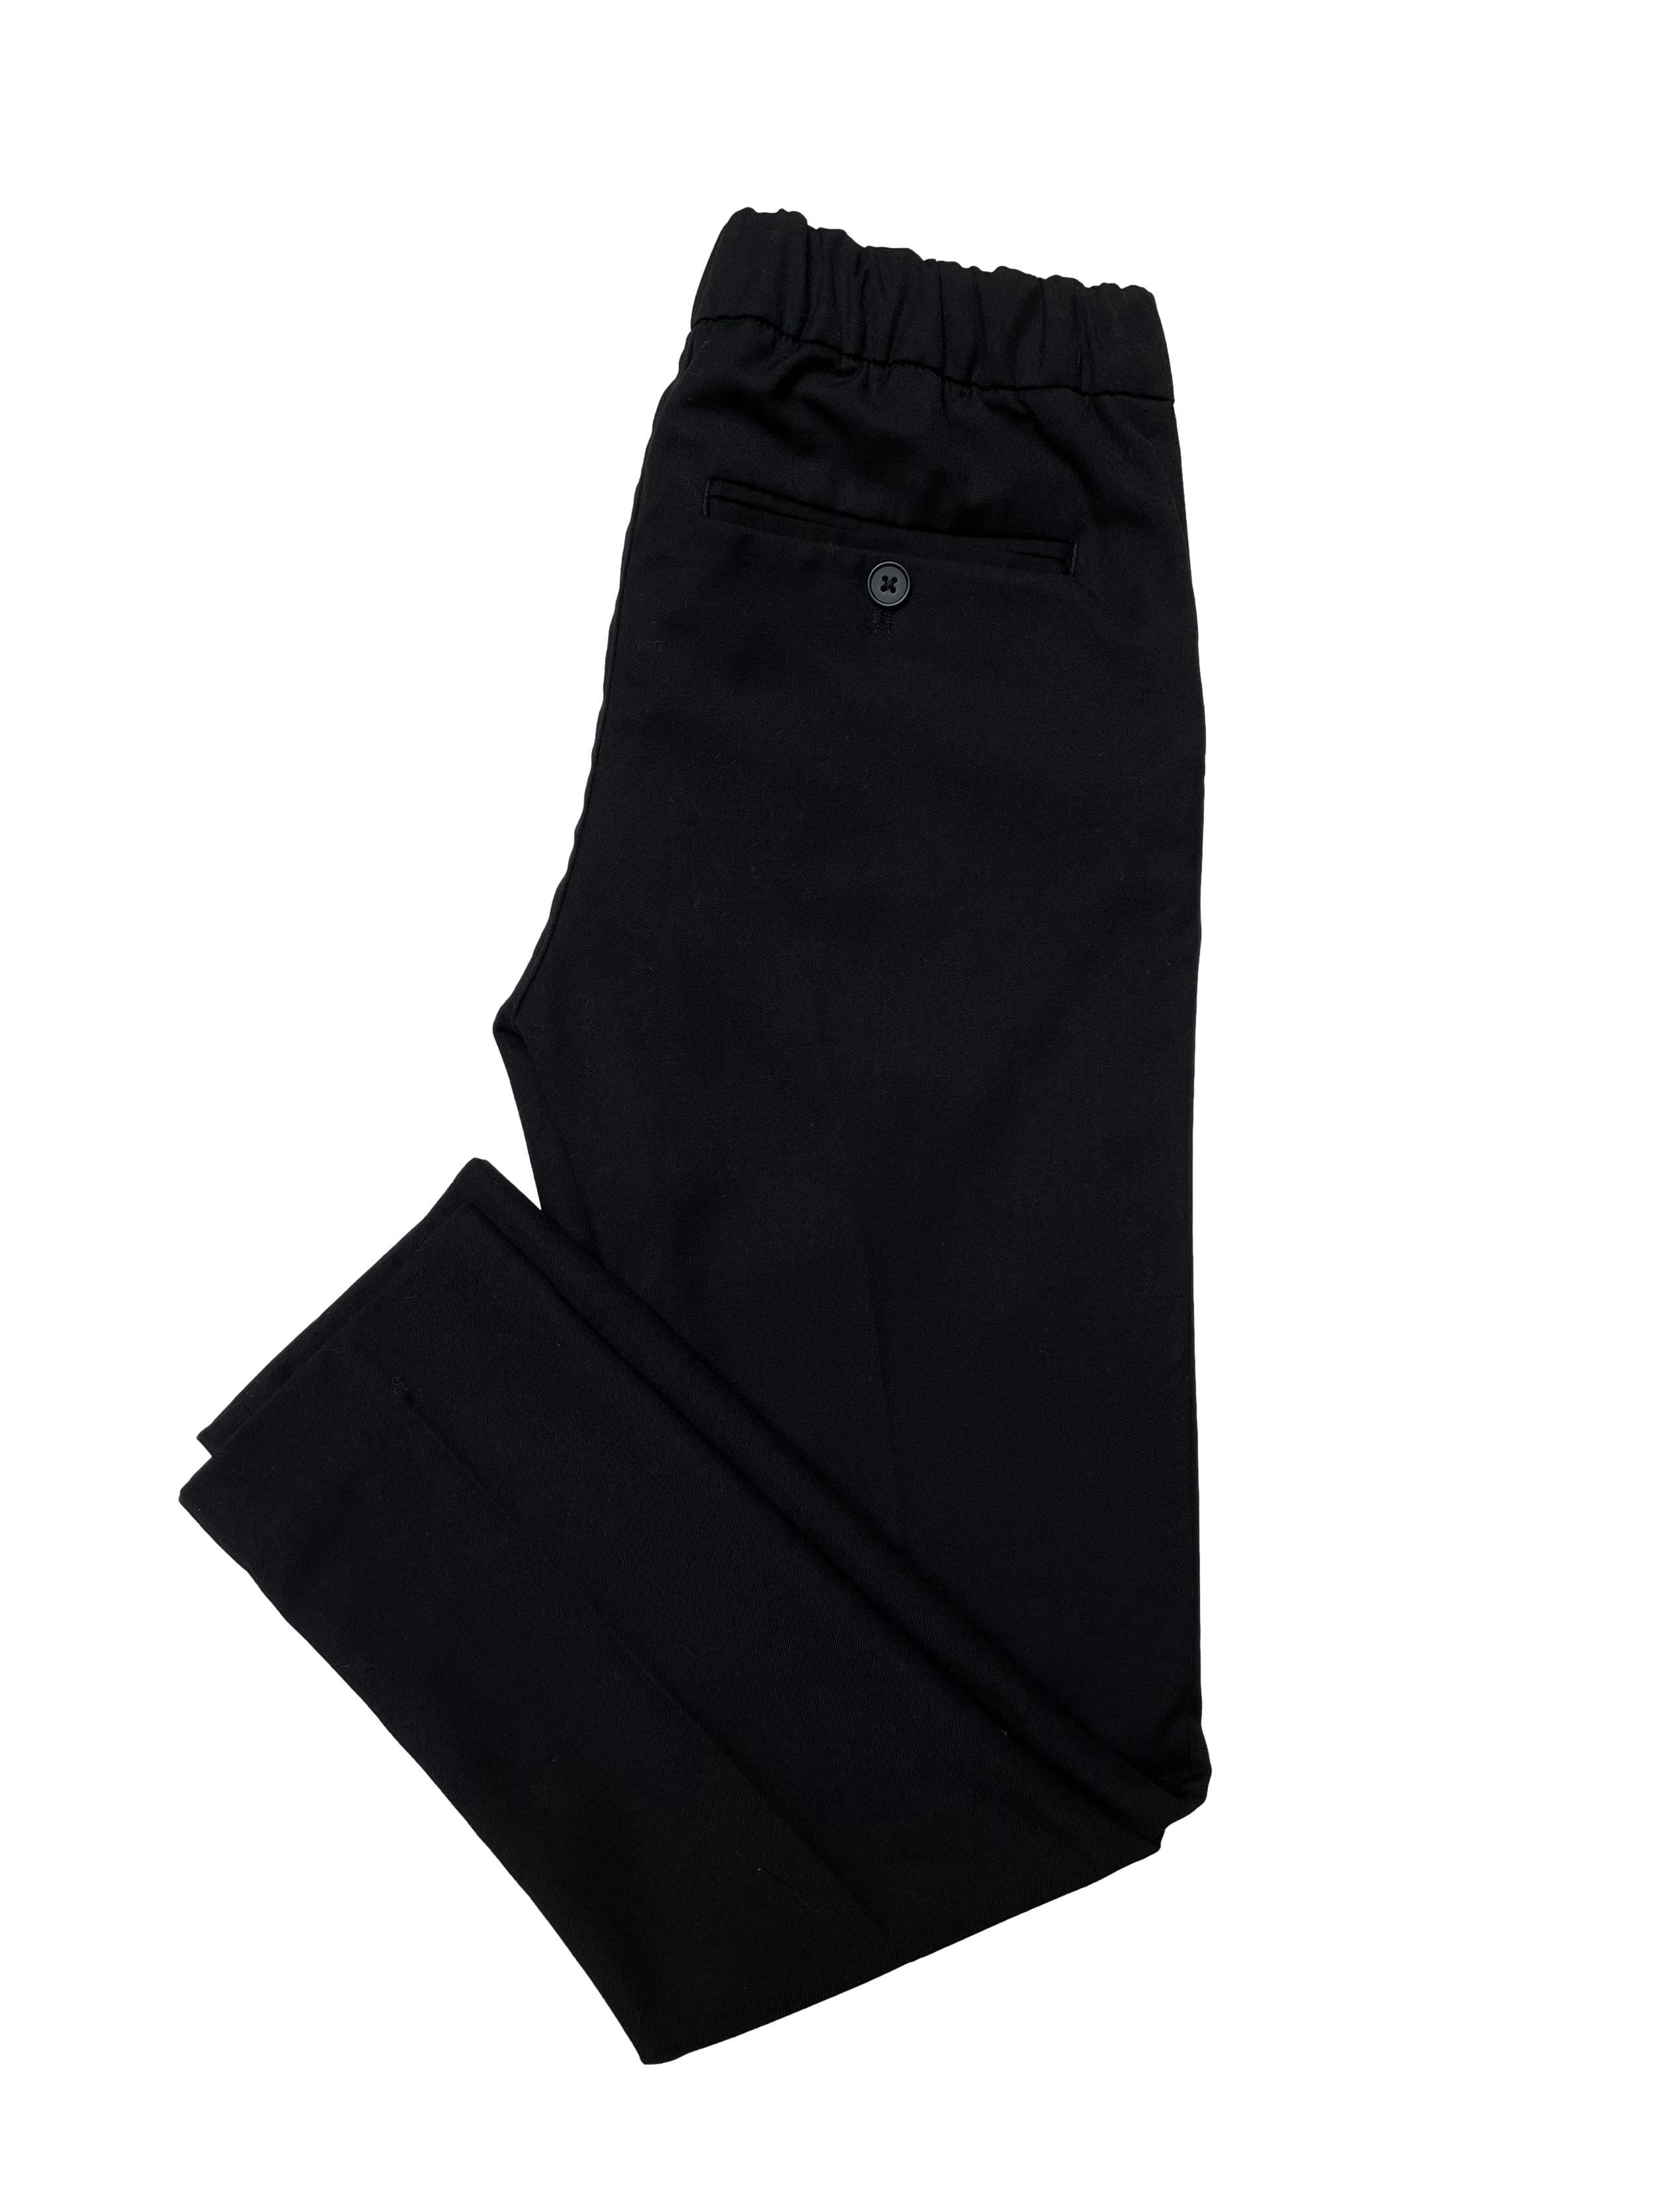 Pantalón de vestir H&M pretina elástica posterior, bolsillos laterales y traseros. Pretina 60cm sin estirar Largo 77cm